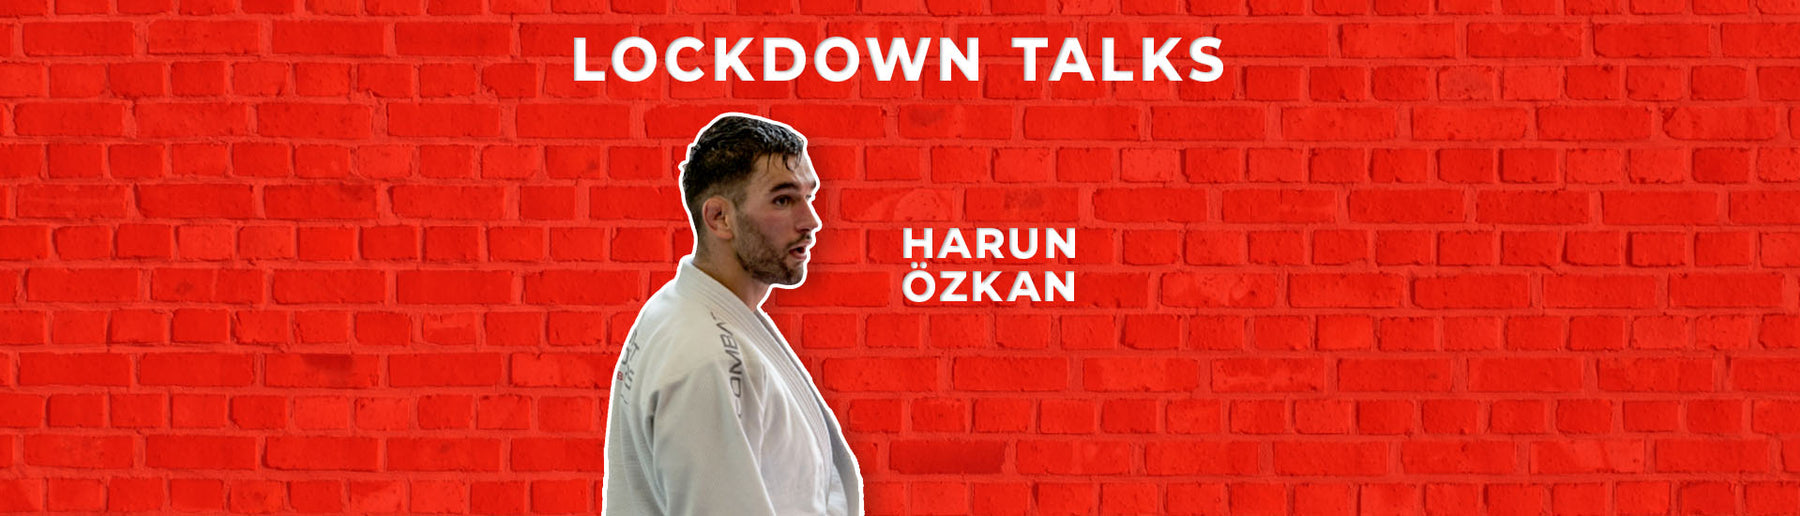 Starting a gym from scratch | Harun Özkan interview